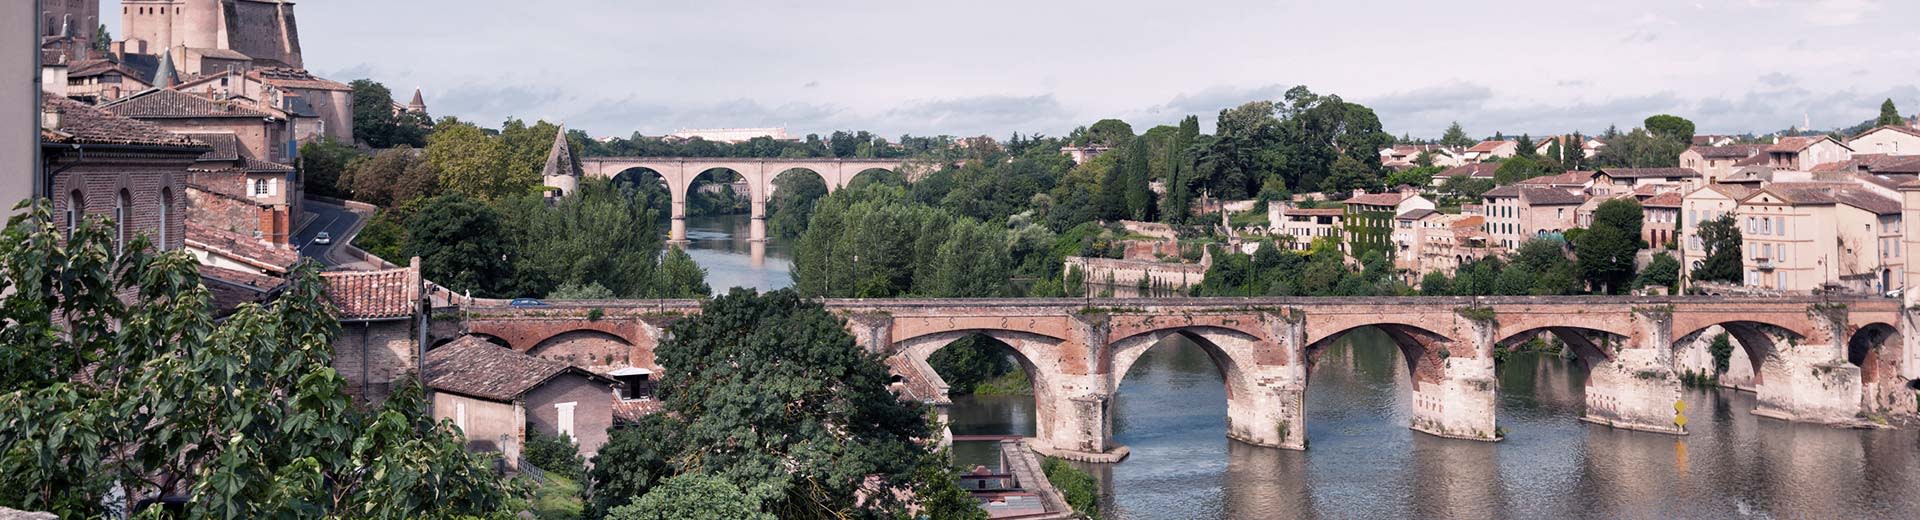 Au-dessus de la rivière Garonne à Toulouse se trouvent deux beaux ponts, avec beaucoup d'arbres et une architecture impressionnante sur l'une ou l'autre rive